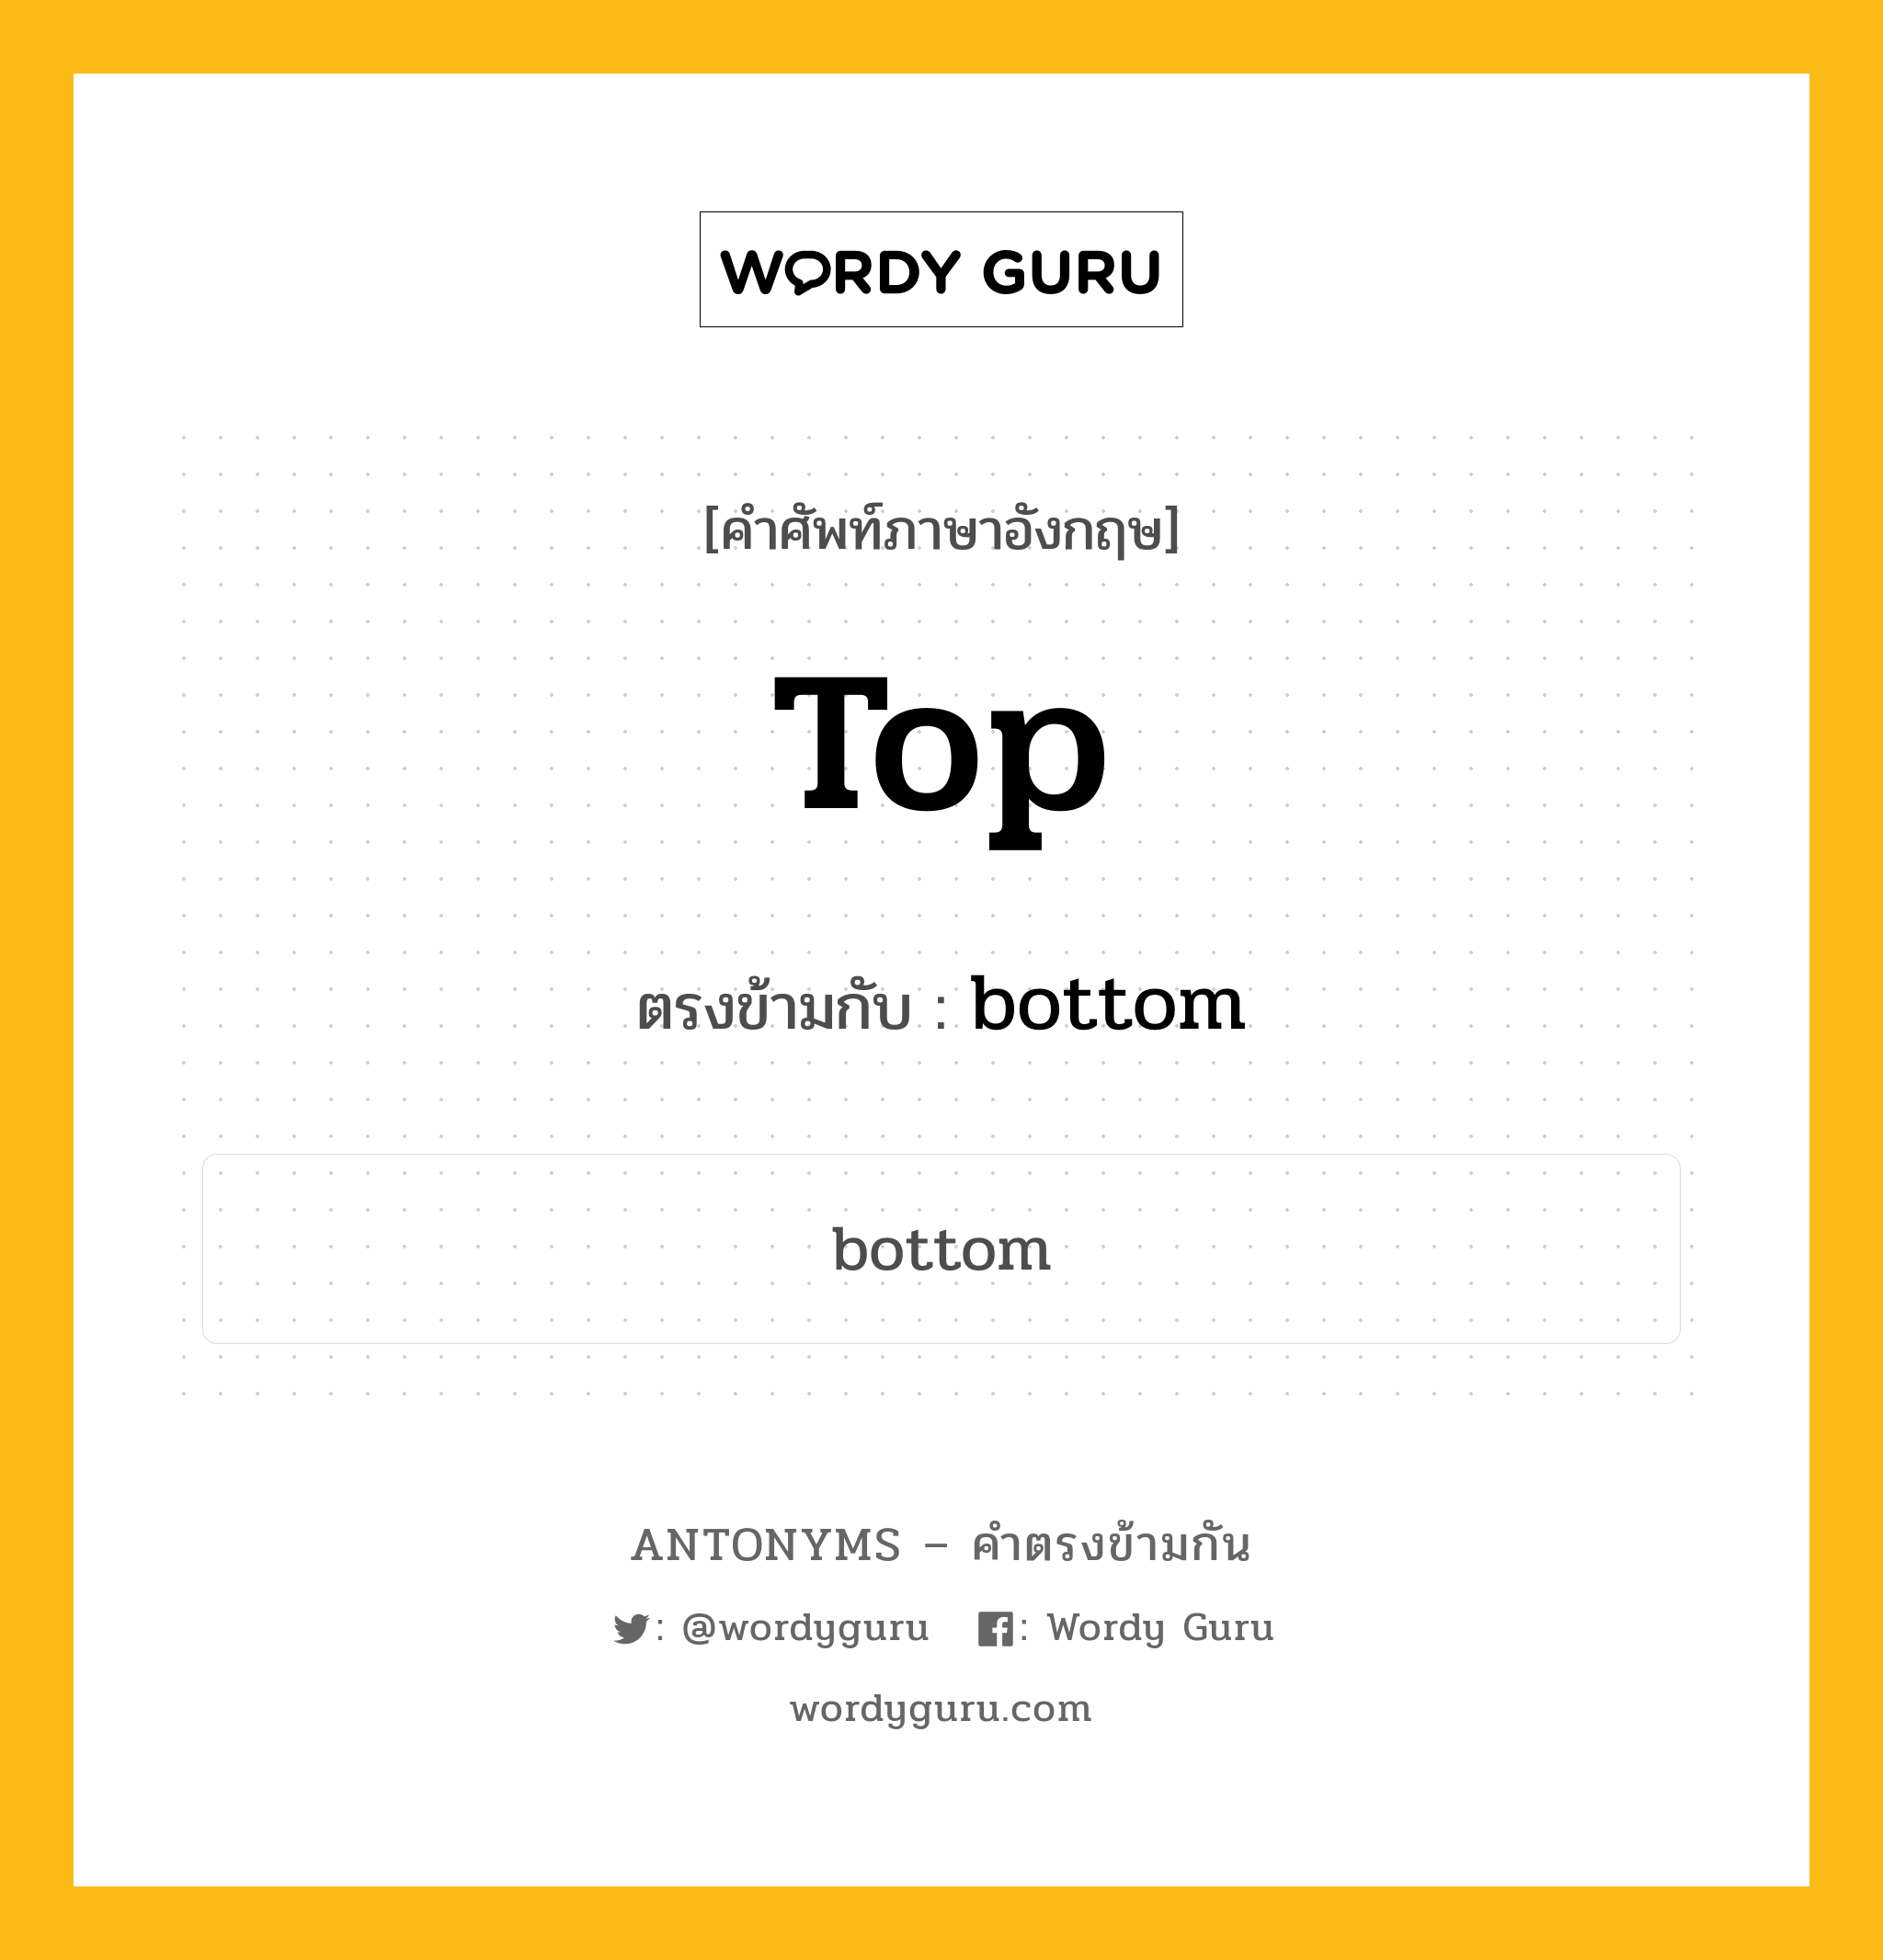 top เป็นคำตรงข้ามกับคำไหนบ้าง?, คำศัพท์ภาษาอังกฤษ top ตรงข้ามกับ bottom หมวด bottom